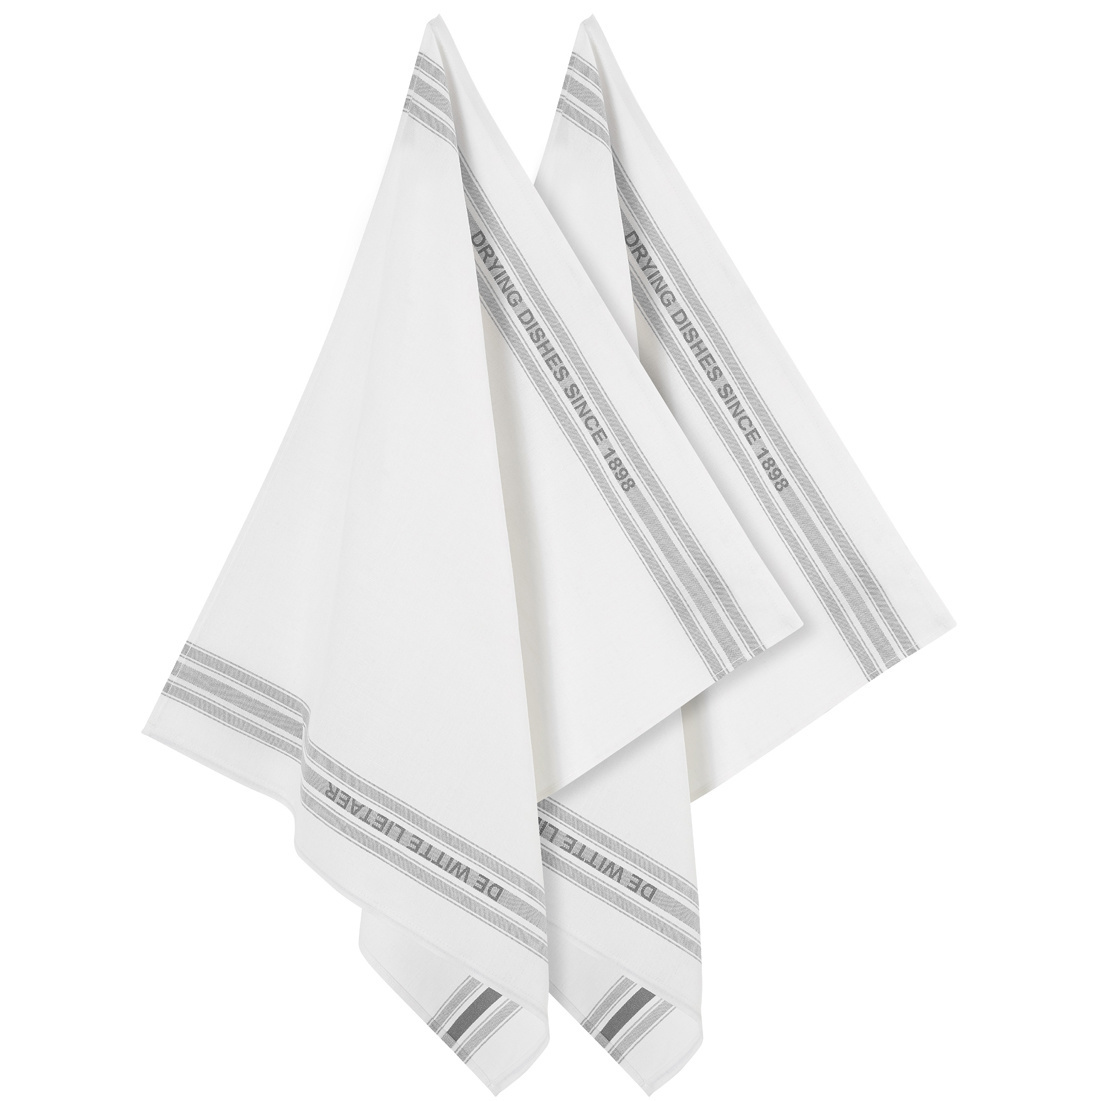 De Witte Lietaer Tea towel Dish, Gray - 2 pieces - 65 x 70 cm - Cotton/Linen